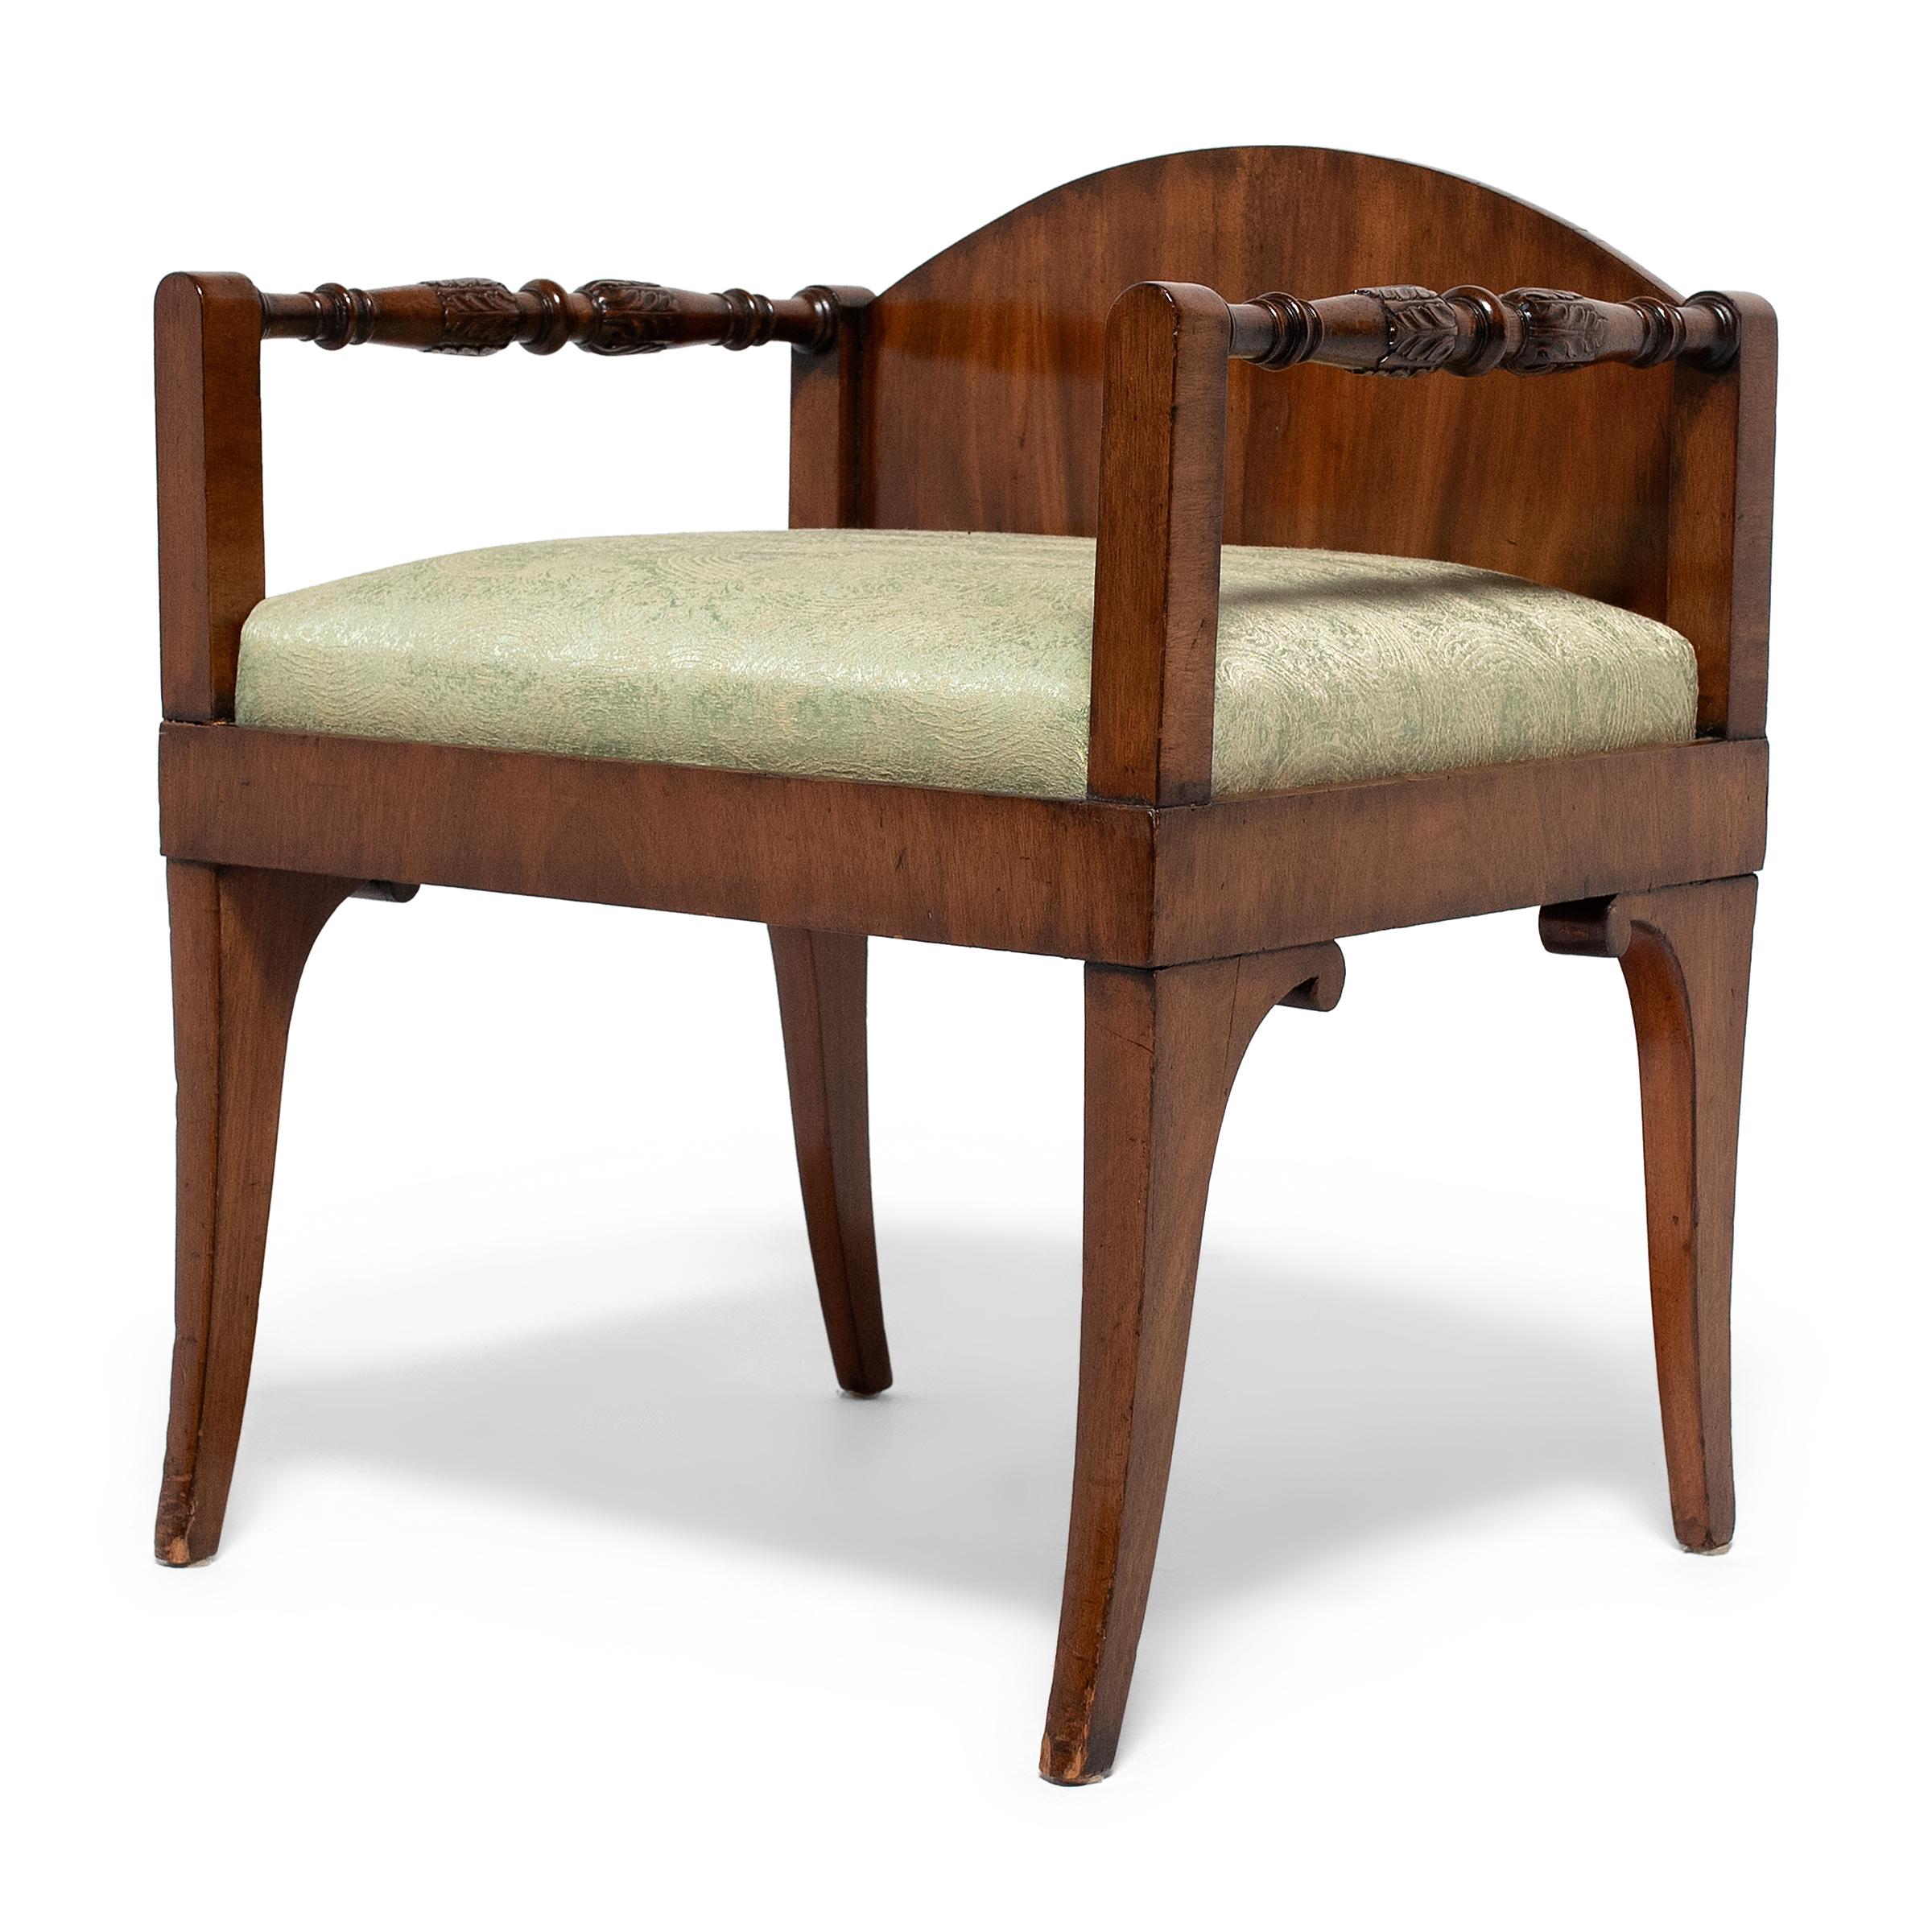 Dieses Paar leichter russischer Sessel aus dem frühen 19. Jahrhundert steht auf elegant verjüngten Säbelbeinen, hat eine niedrige, gewölbte Rückenlehne und gedrechselte Armlehnen, die mit Akanthusblattschnitzereien verziert sind. Die Stühle sind aus